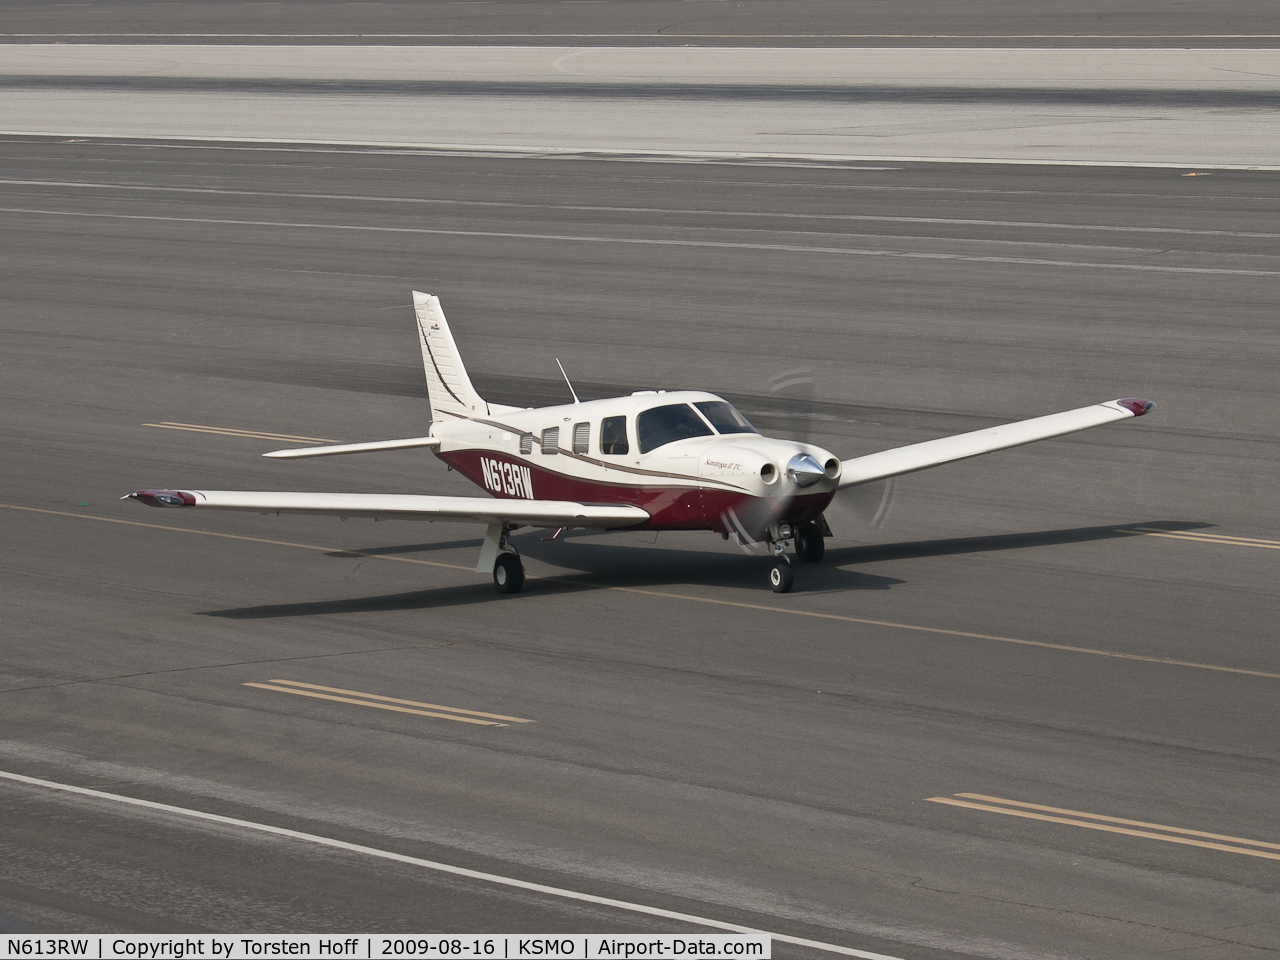 N613RW, 2002 Piper PA-32R-301T Turbo Saratoga C/N 3257295, N613RW taxiing